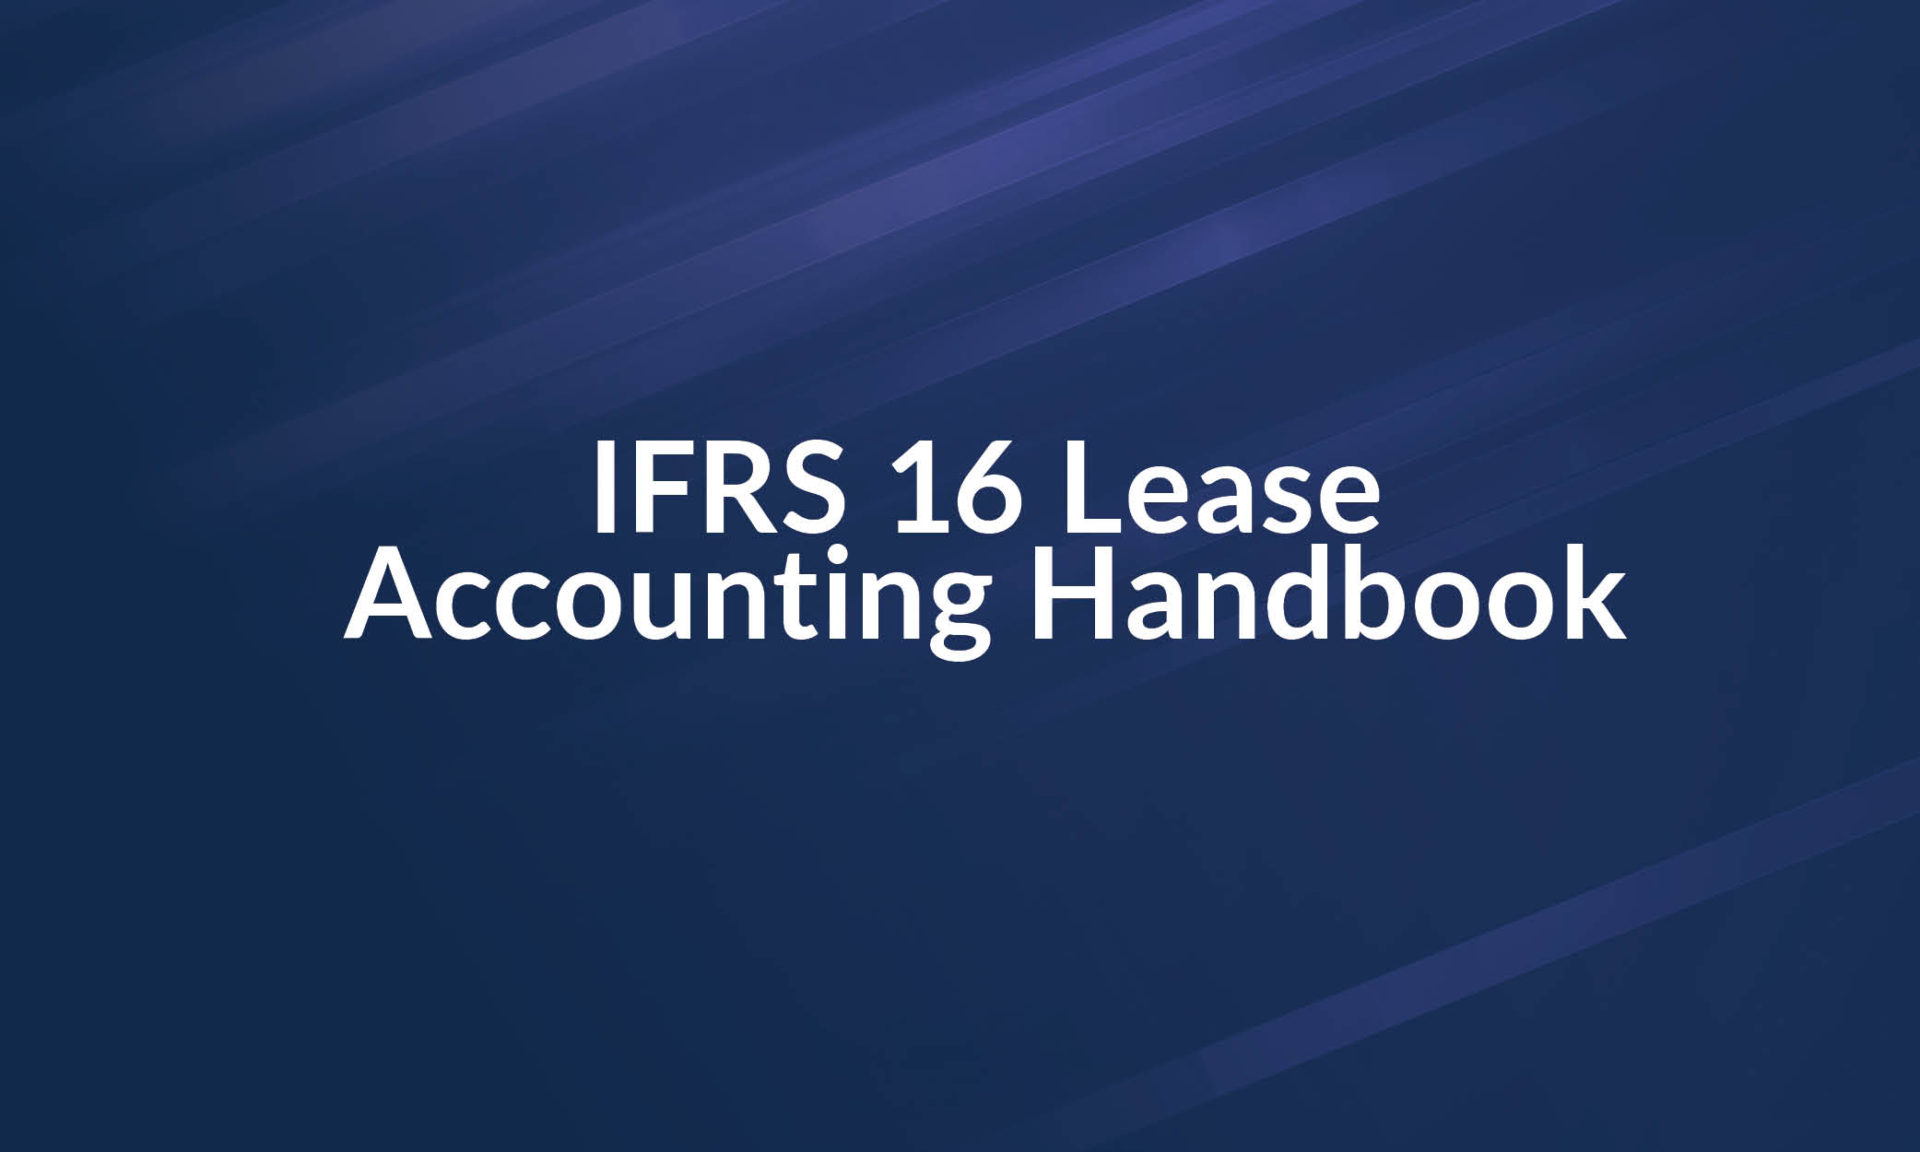 IFRS 16 Handbook